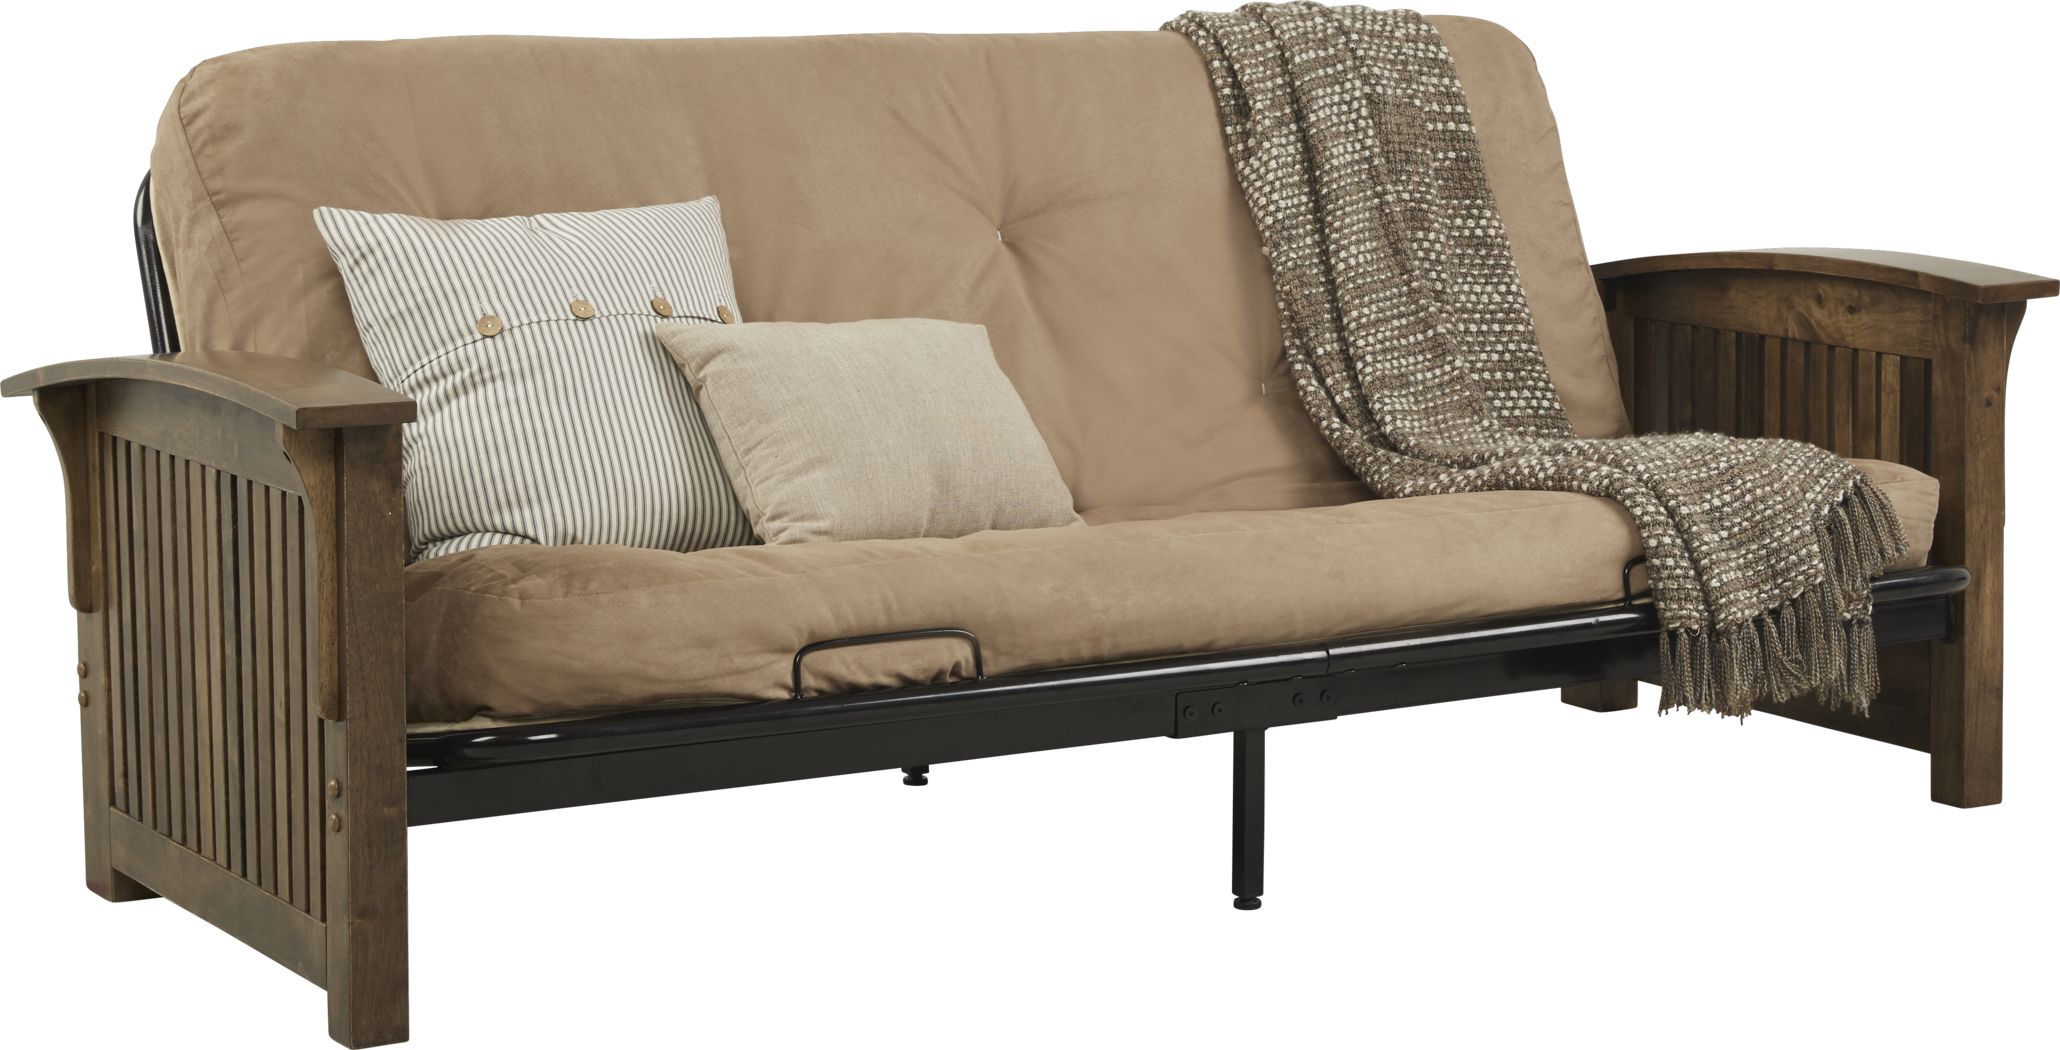 dark brown futon mattress full size